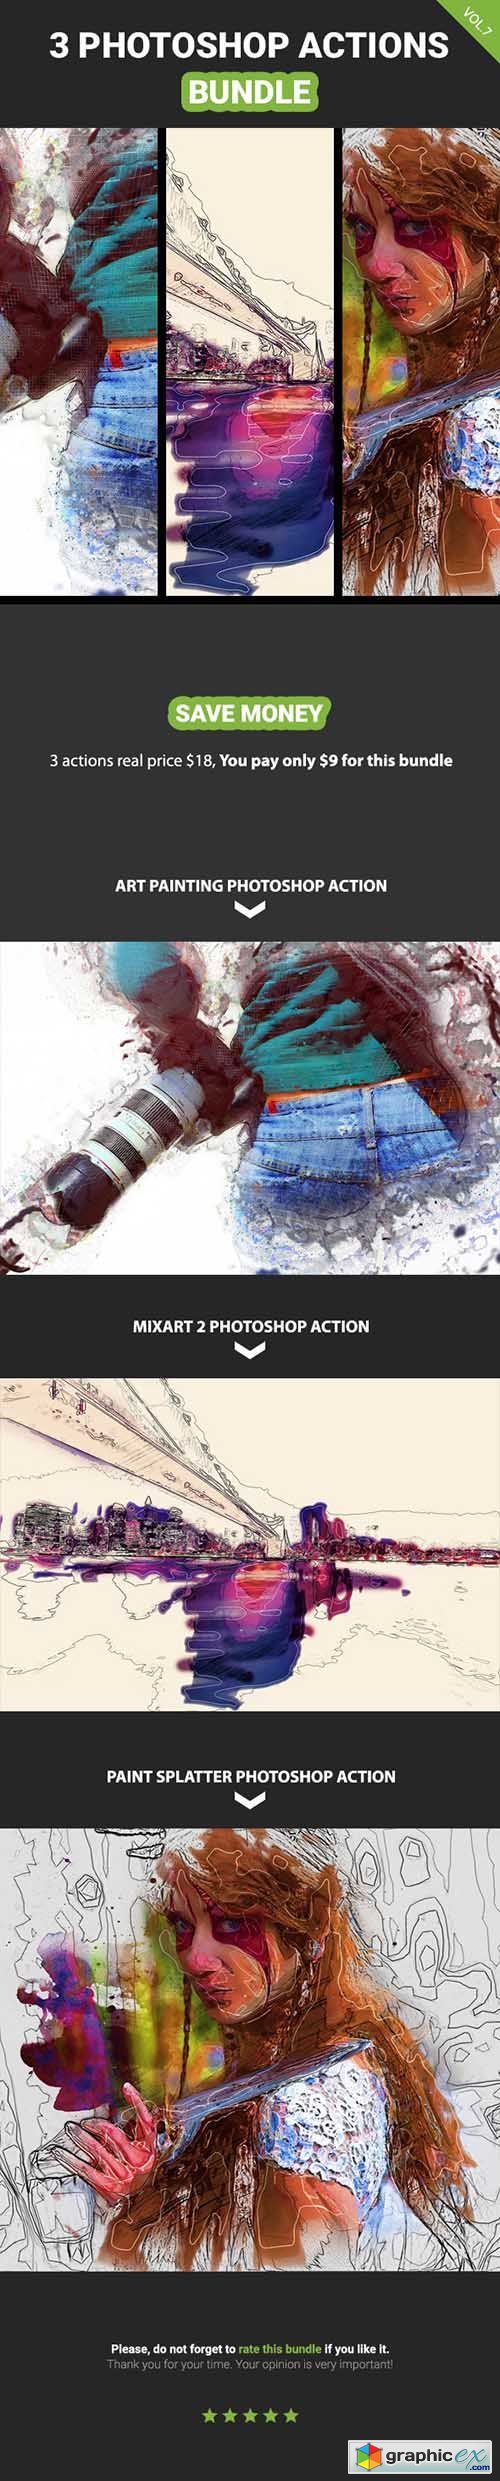 3 Photoshop Action Bundle - Vol.7